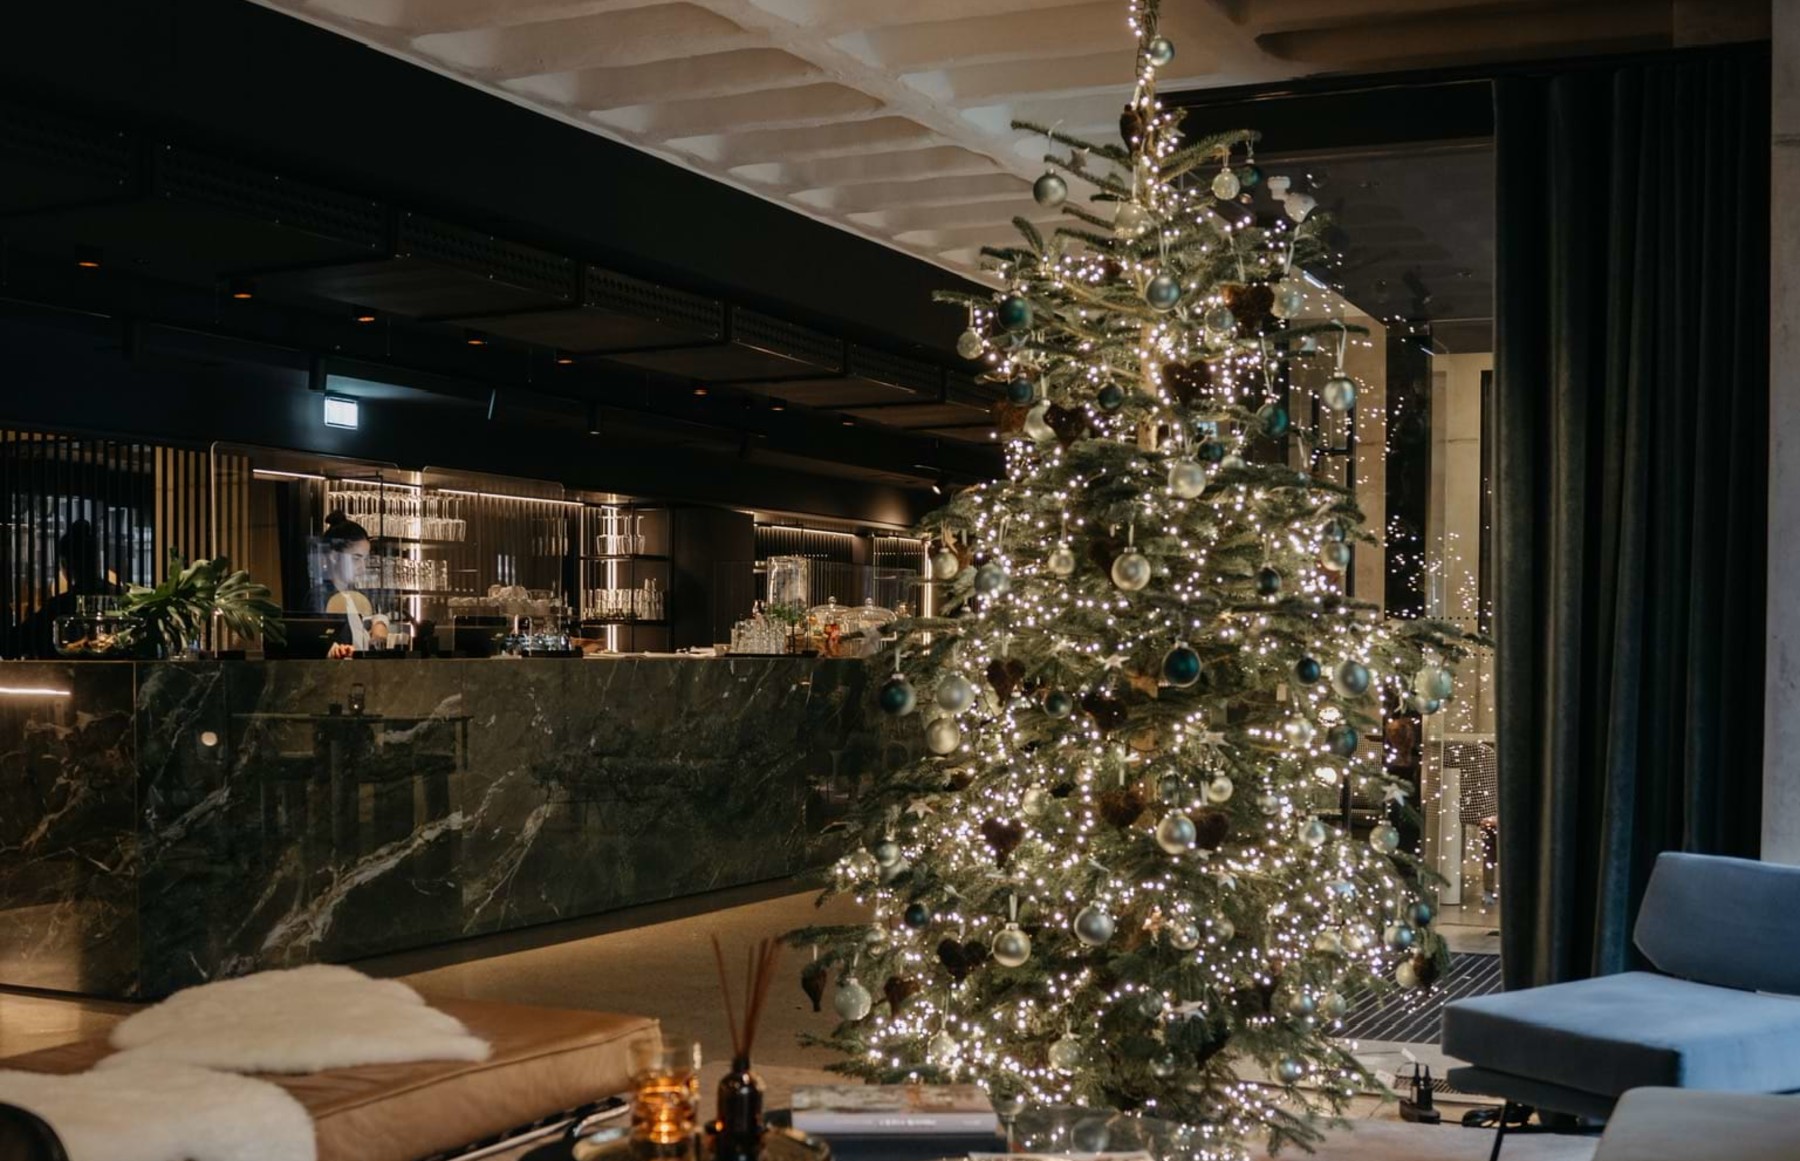 Weihnachtlich geschmückte Rooftop Lounge im Design Hotel mit Weihnachtsbaum